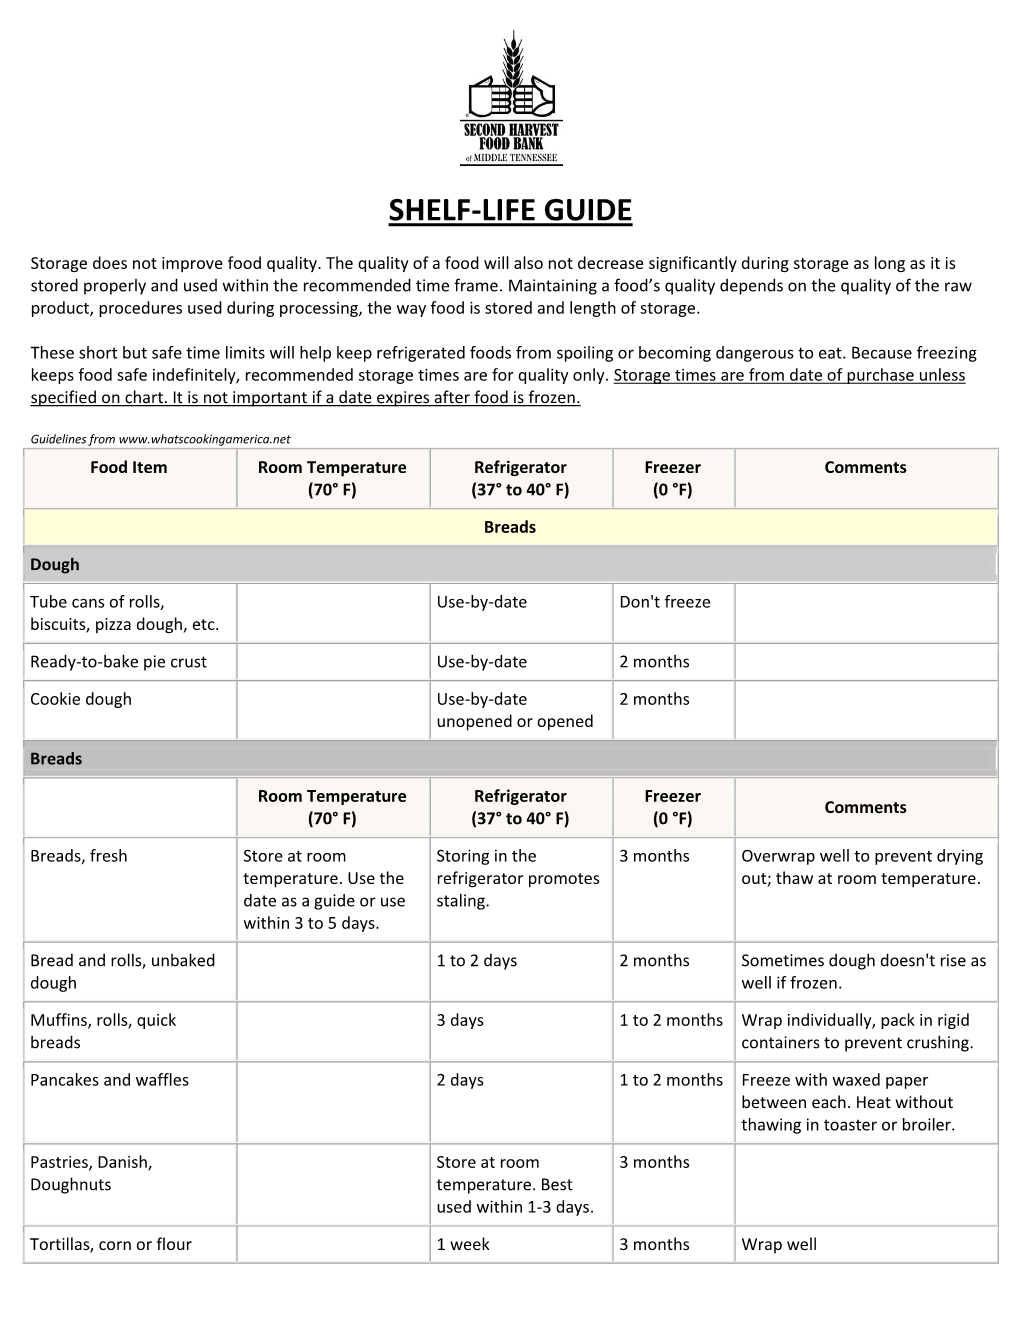 Shelf-Life Guide